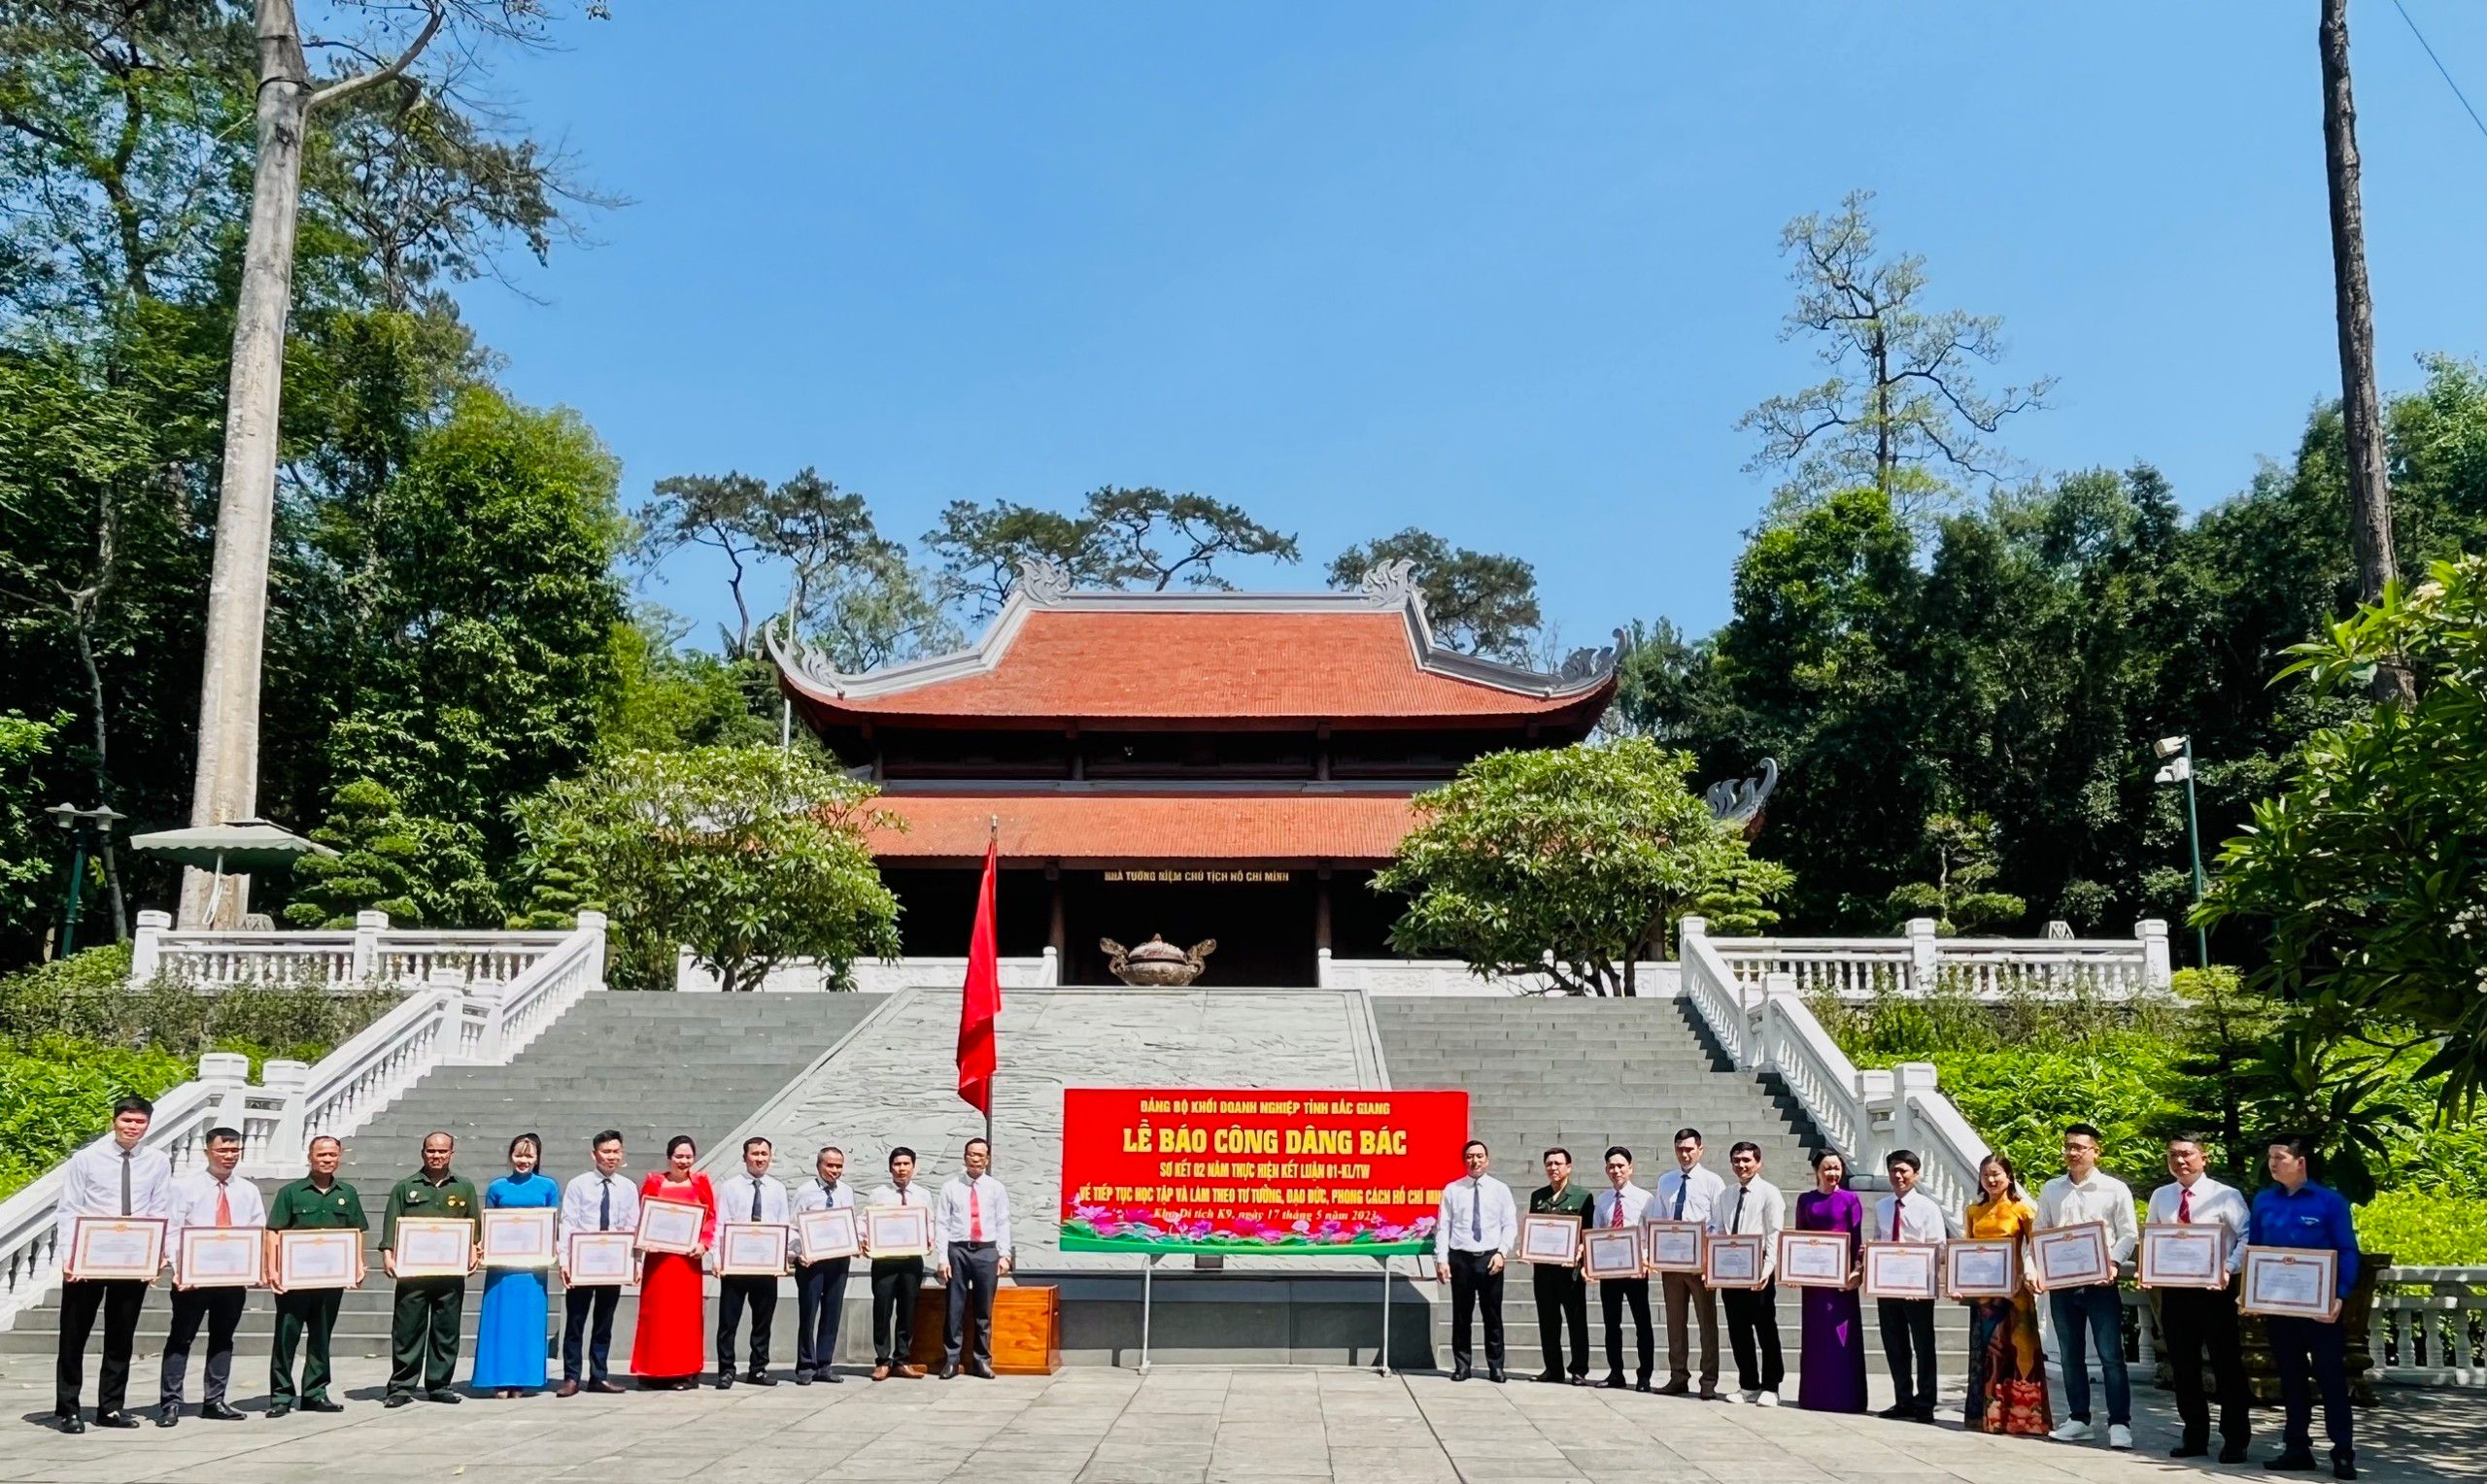 Bắc Giang: Tăng cường bảo vệ nền tảng tư tưởng của Đảng trong các doanh nghiệp trên địa bàn